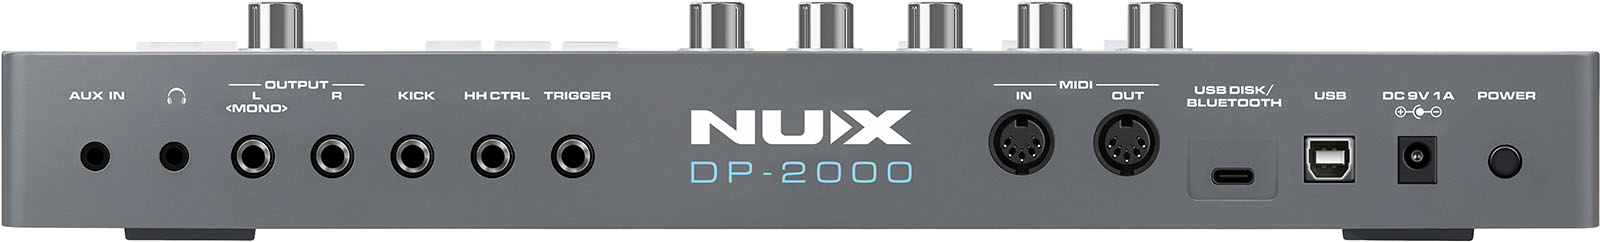 NUX DP-2000 2